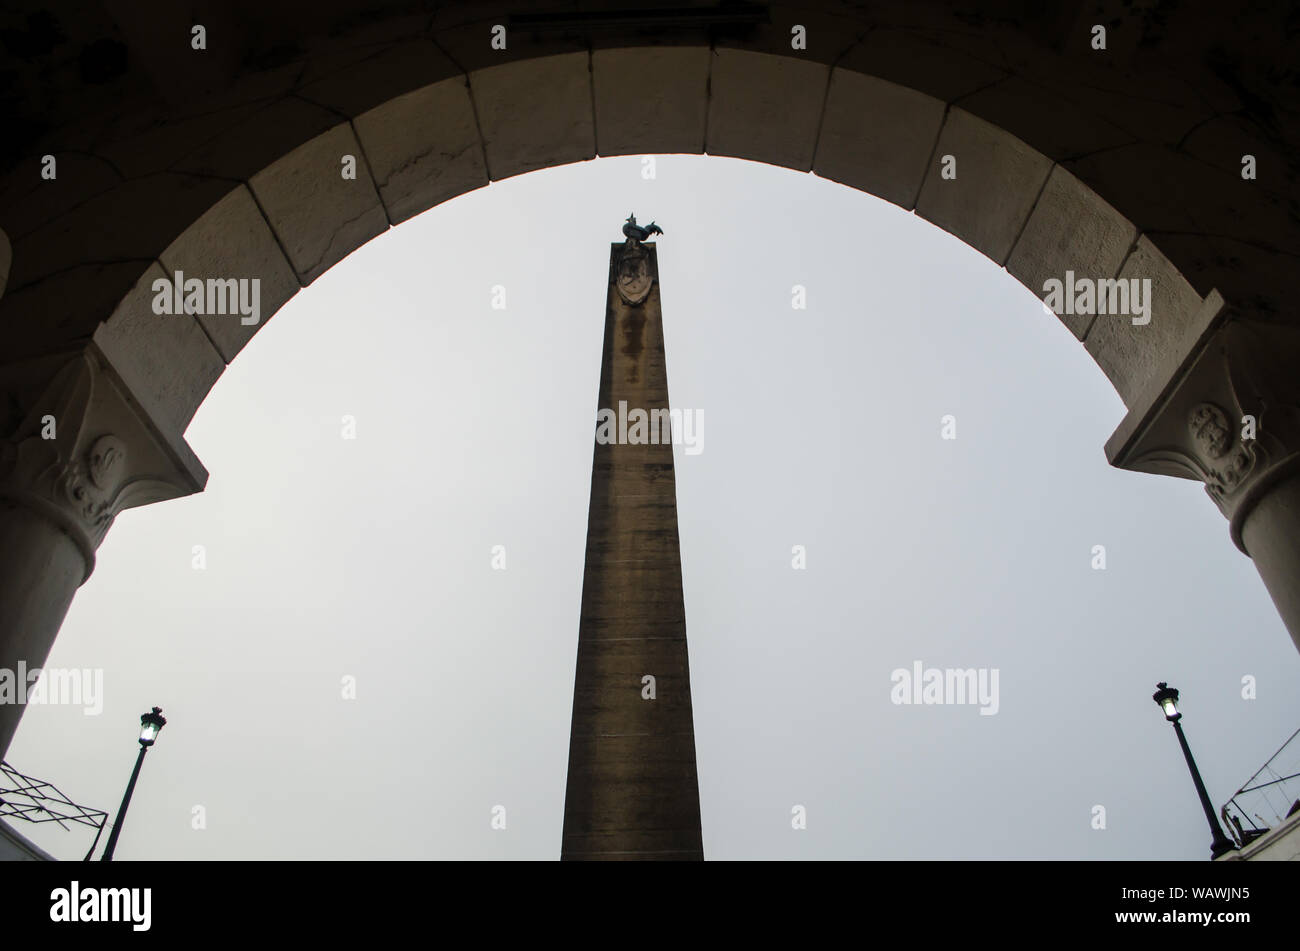 Detalles de la Plaza francesa, linternas y el obelisco en el centro Foto de stock